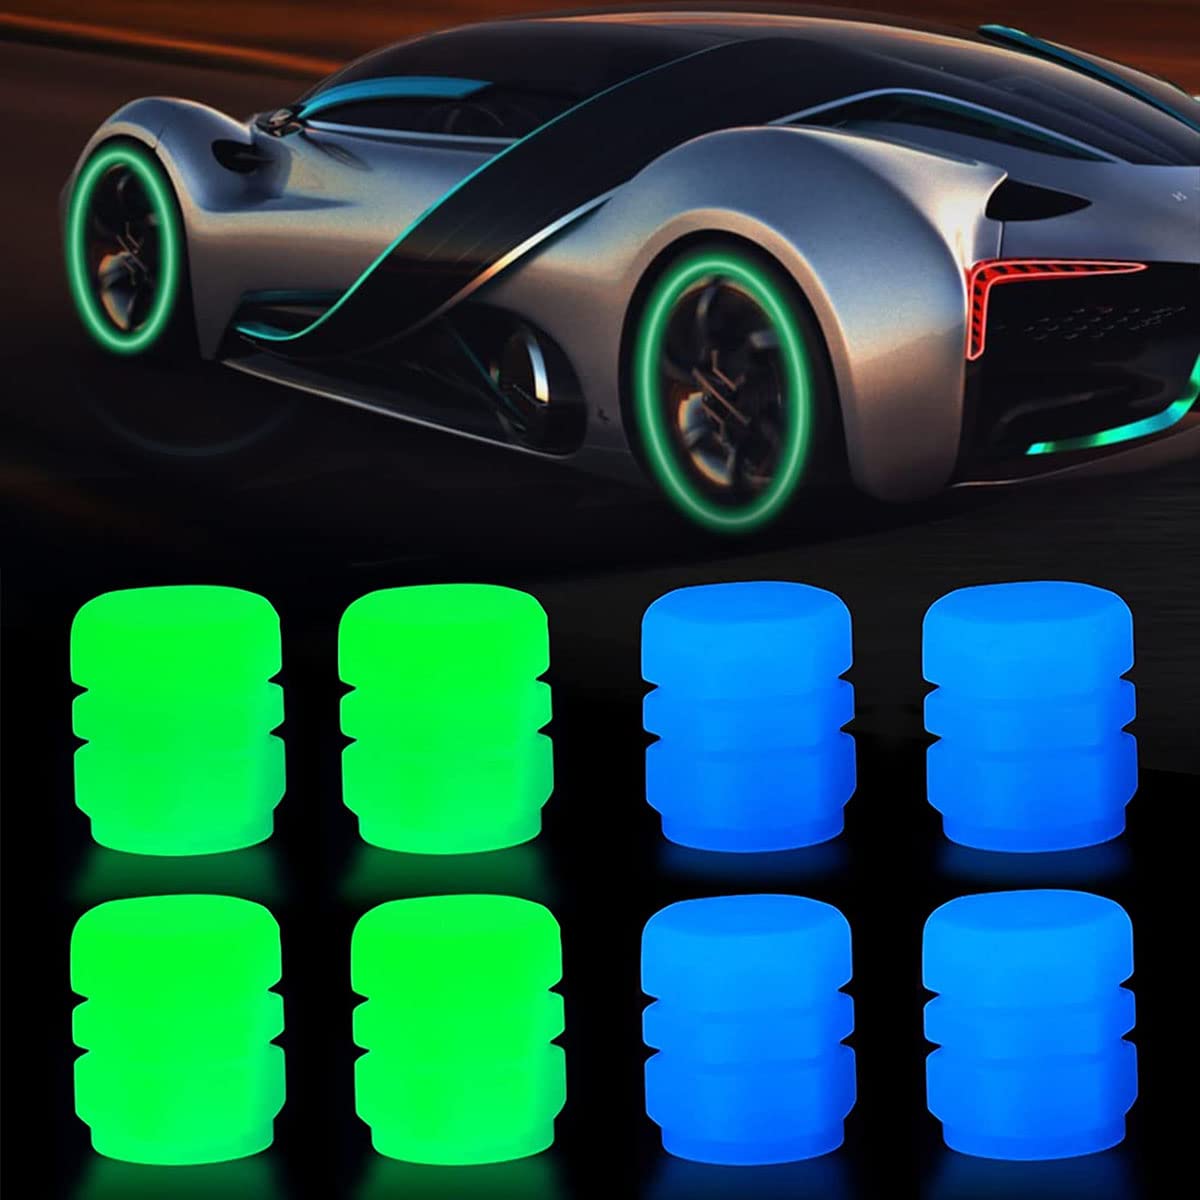 Universal Autoreifen Ventilkappen, Fluoreszierende Autoreifen, Leuchtende Ventilkappen Auto, Universal Reifen Ventilschaftabdeckung für Fahrrad Motorrad Auto (4 grün+4 blau) von Lerkely